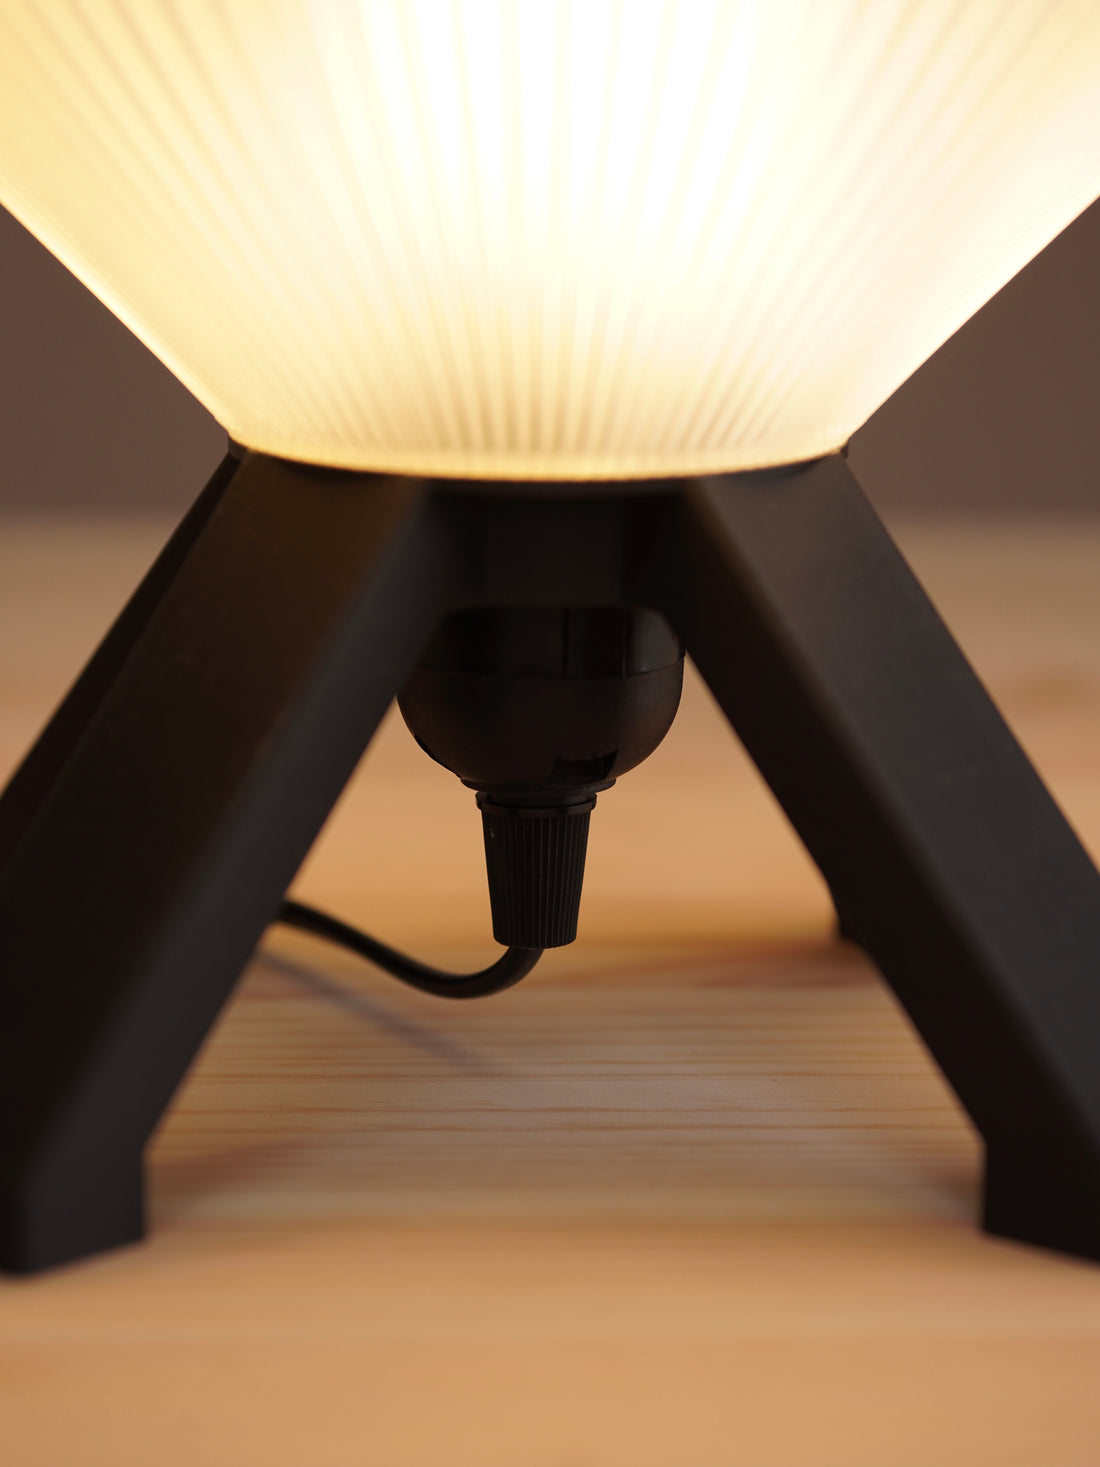 Tischlampe Airi - minimalistisches Design